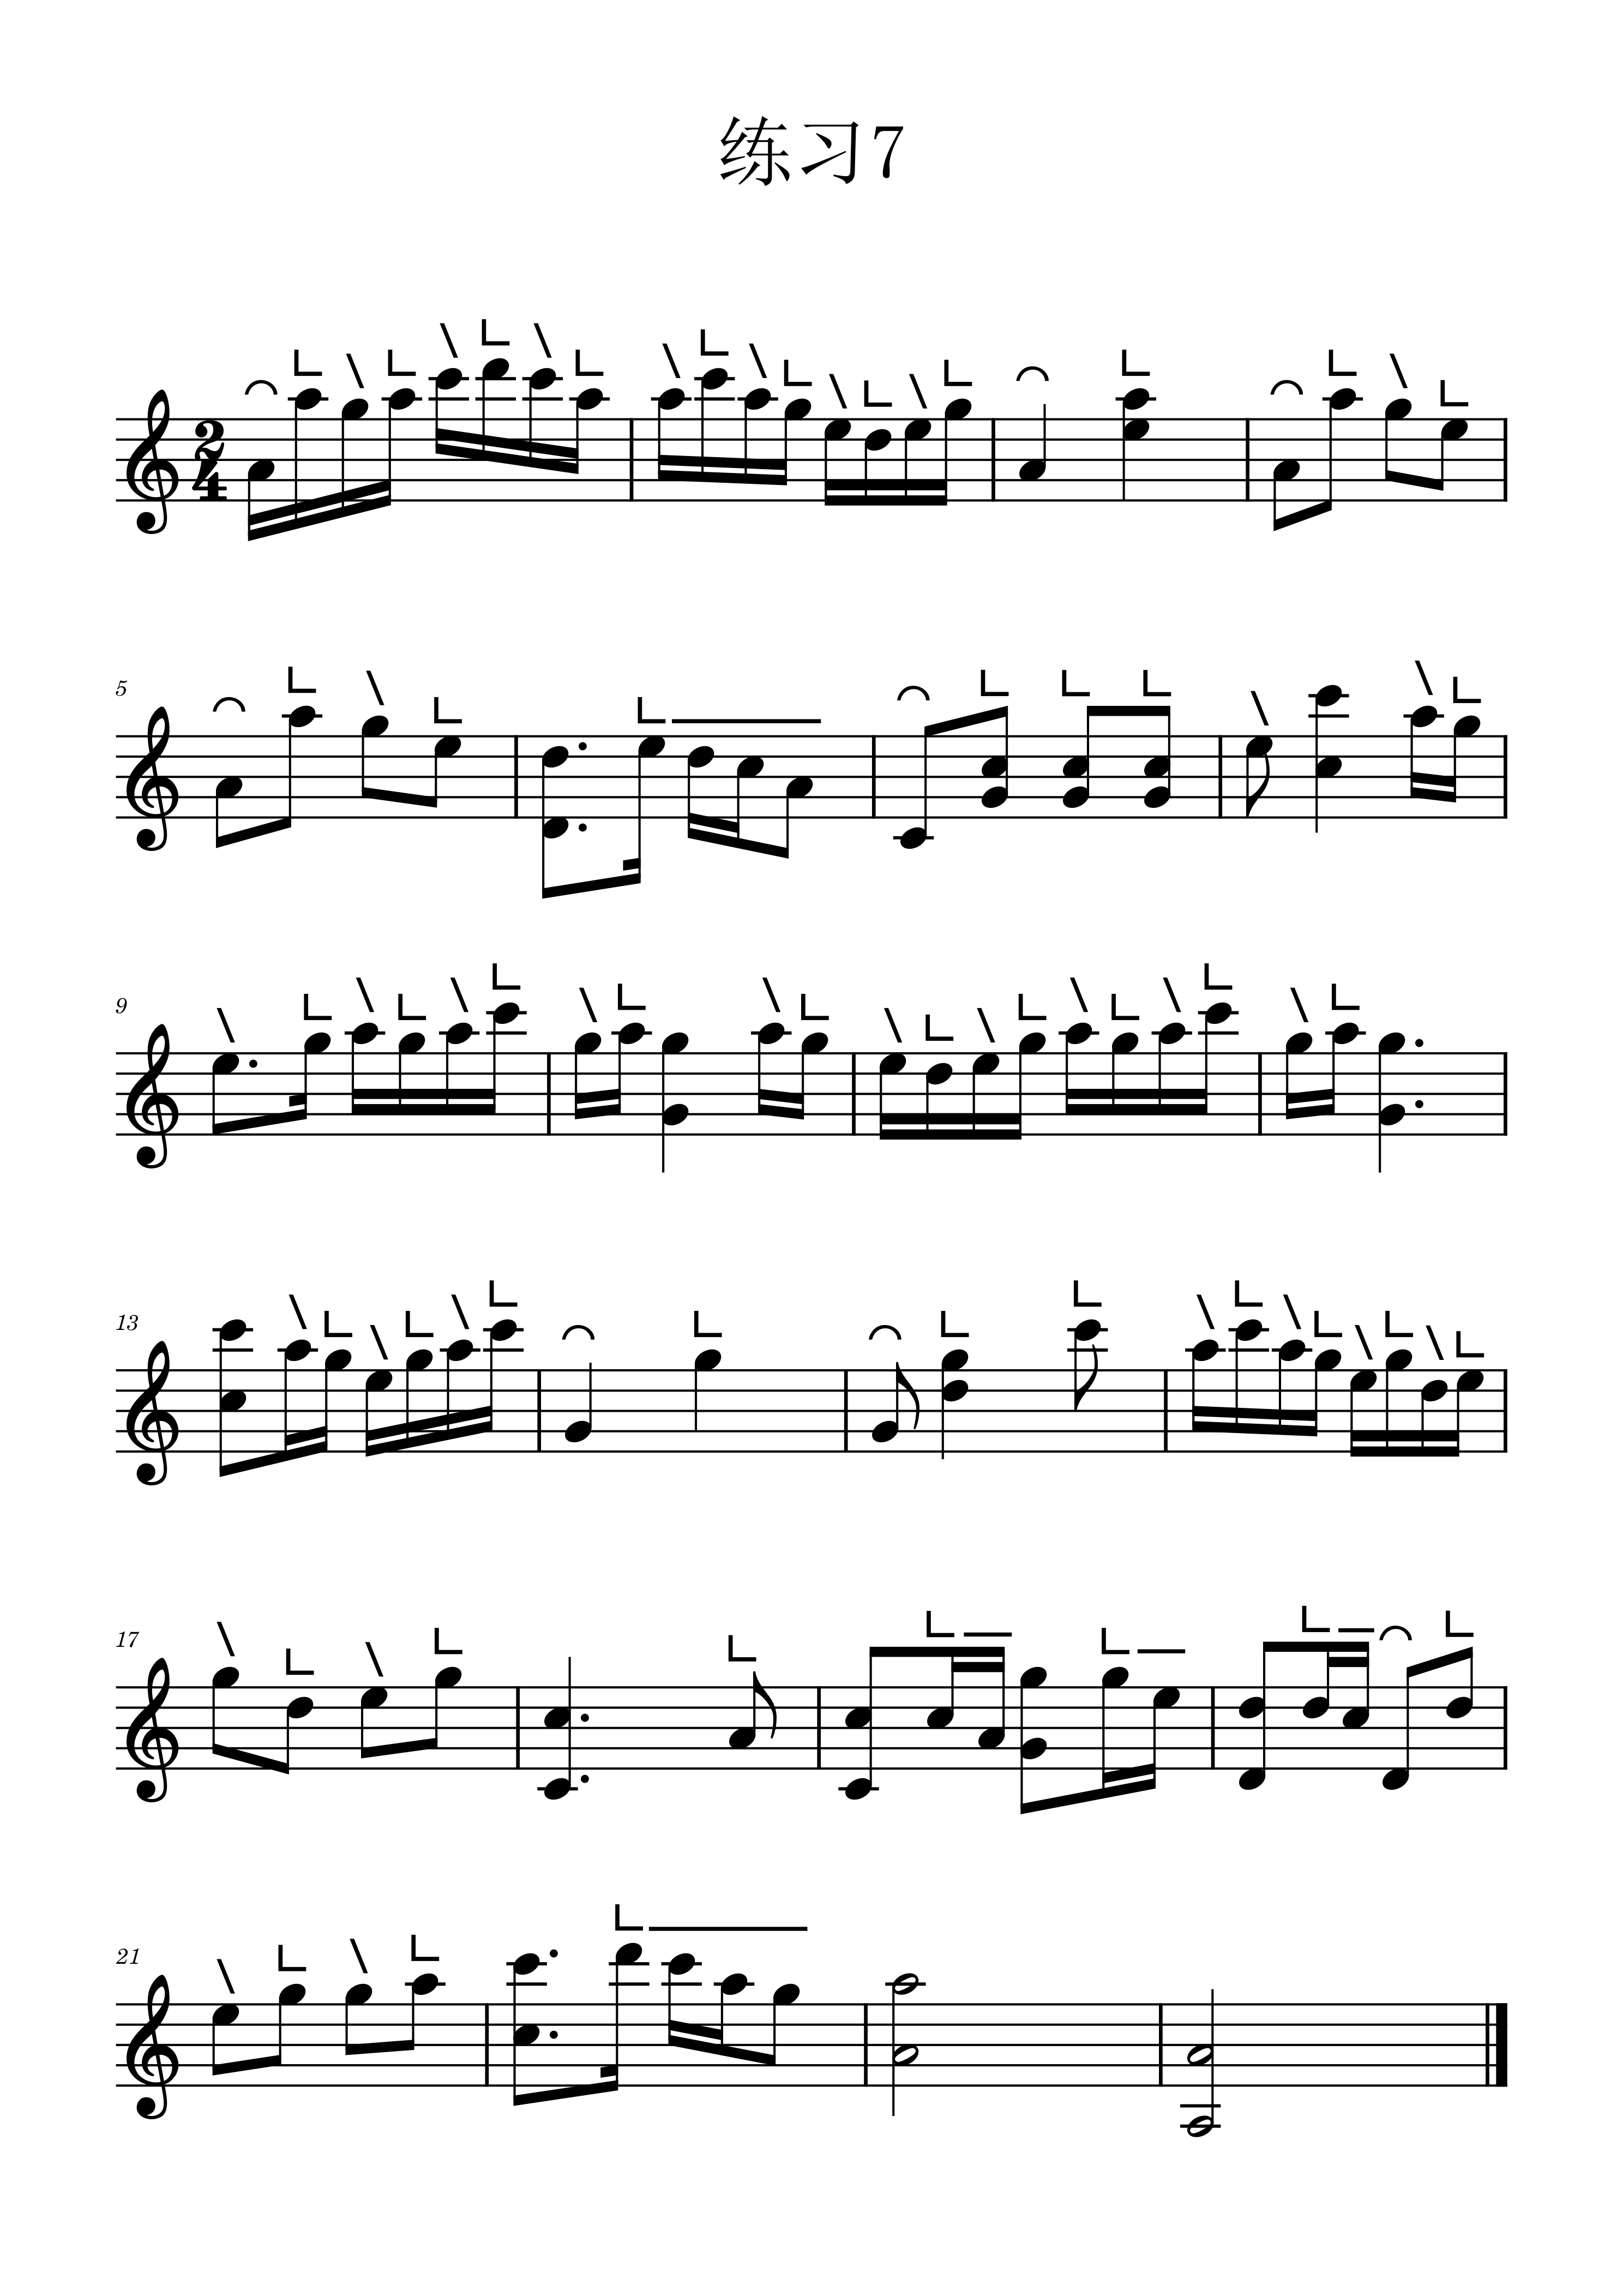 Etude 7 in C of Guzheng staff score（guzheng sheet music）